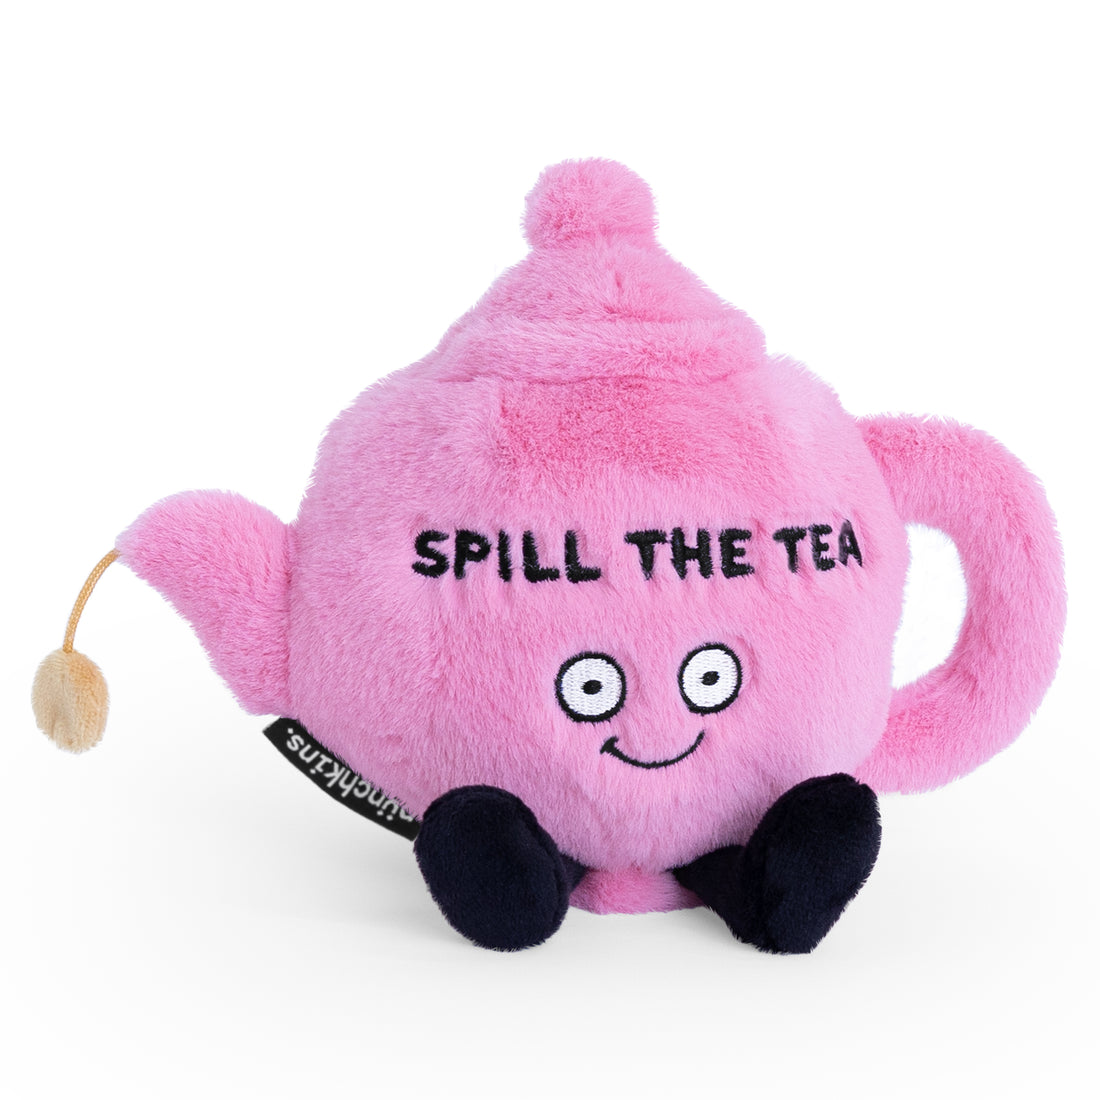 &quot;Spill the Tea&quot; Plush Teapot